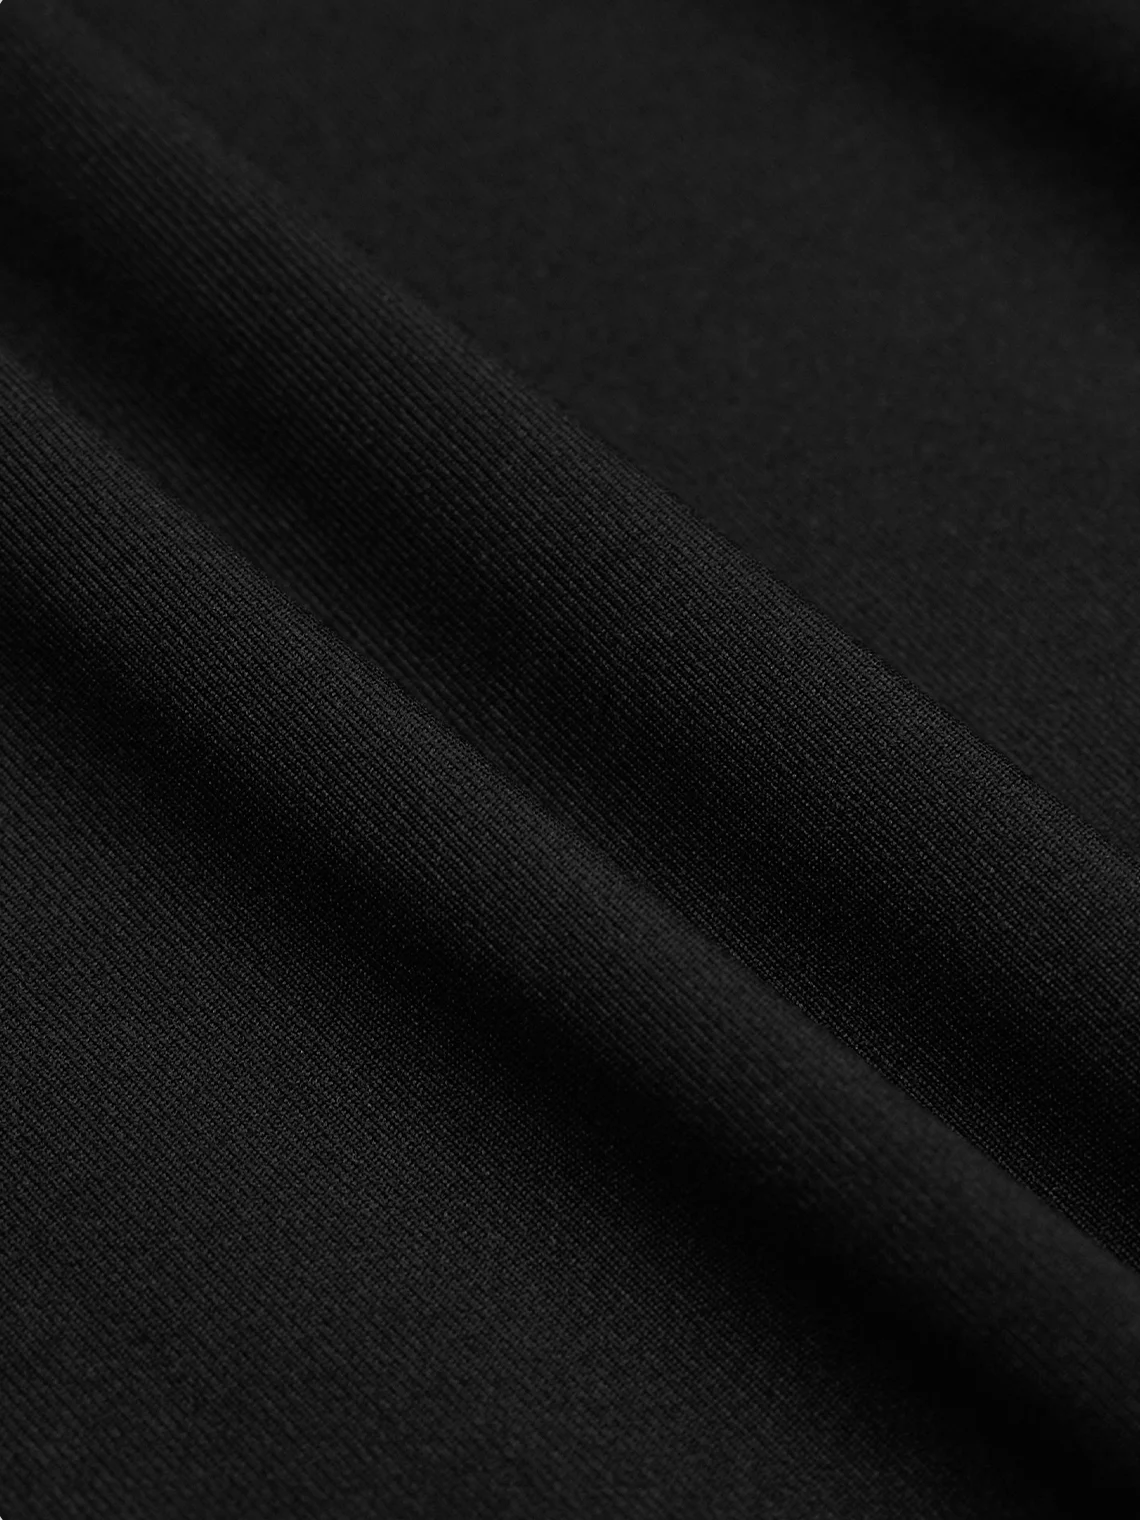 【Final Sale】Edgy Black Lace up Asymmetrical design Two-Piece Set